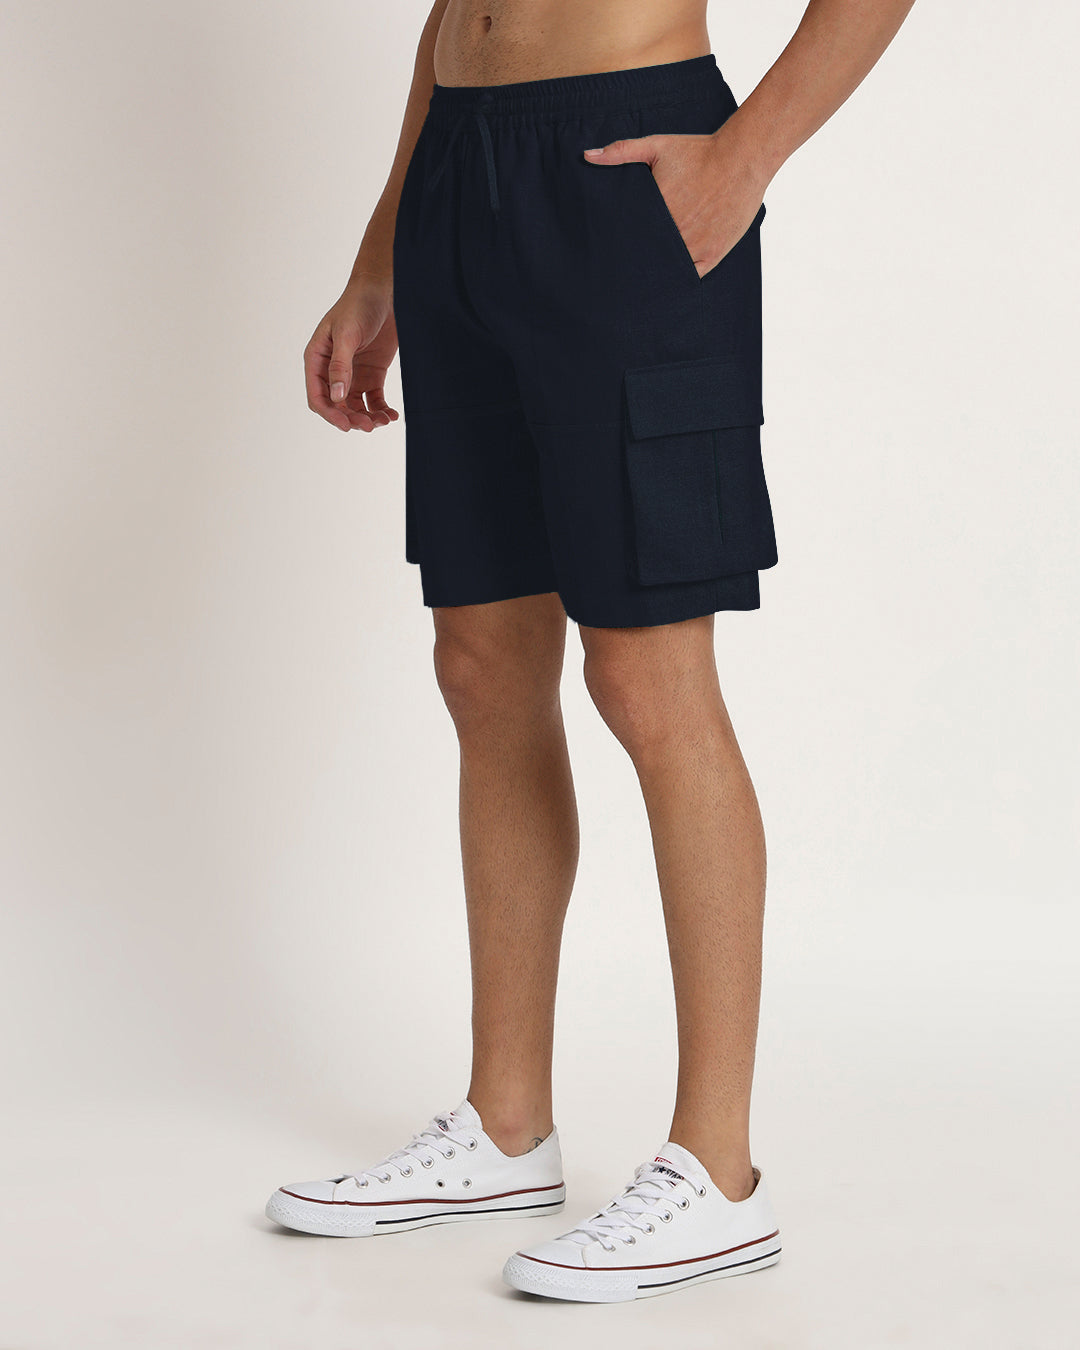 Combo : Slub Comfort Cargo Shorts Black & Midnight Blue Men's Shorts